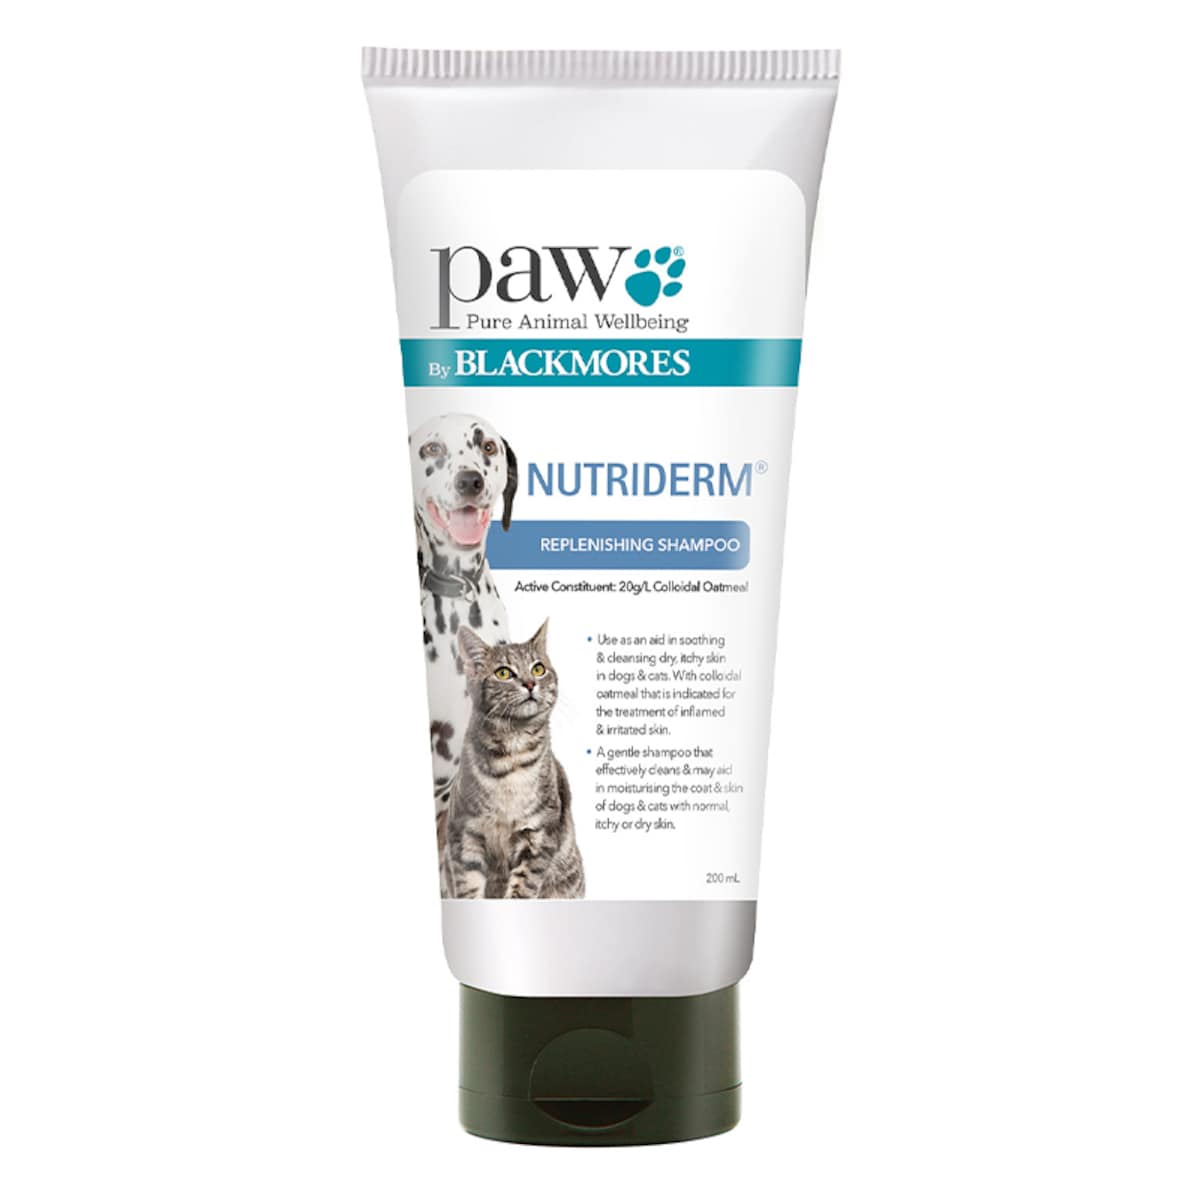 Blackmores PAW NutriDerm Replenishing Shampoo 200ml